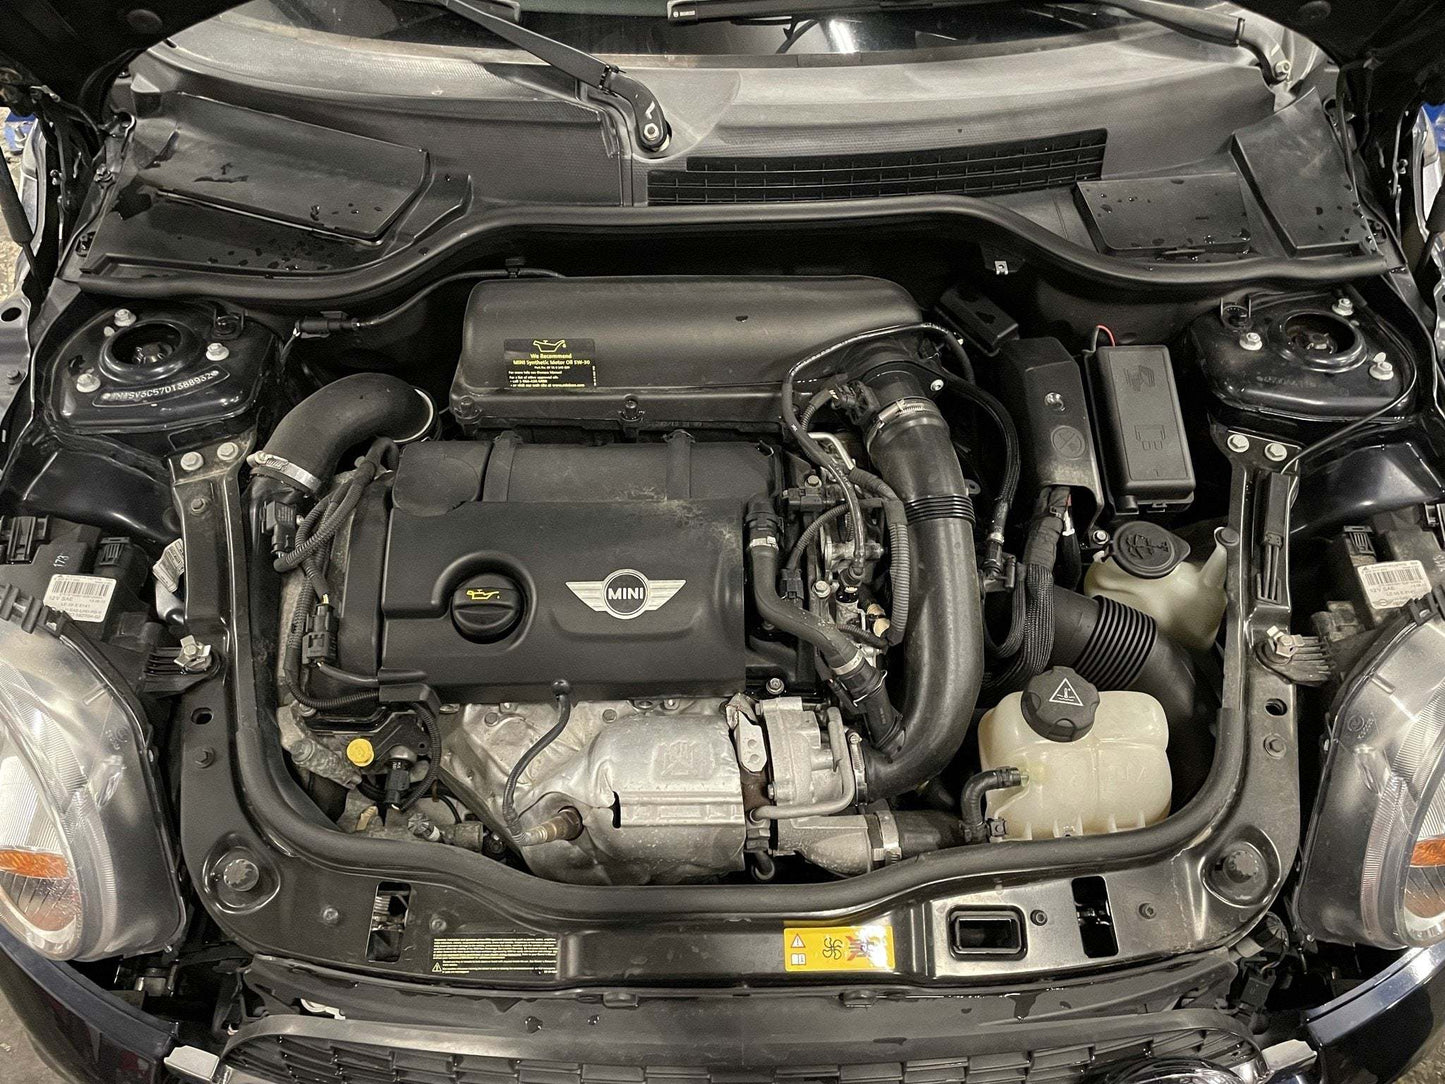 2013 MINI Cooper Hatchback S, New Parts Car (December 2021) Stk #268